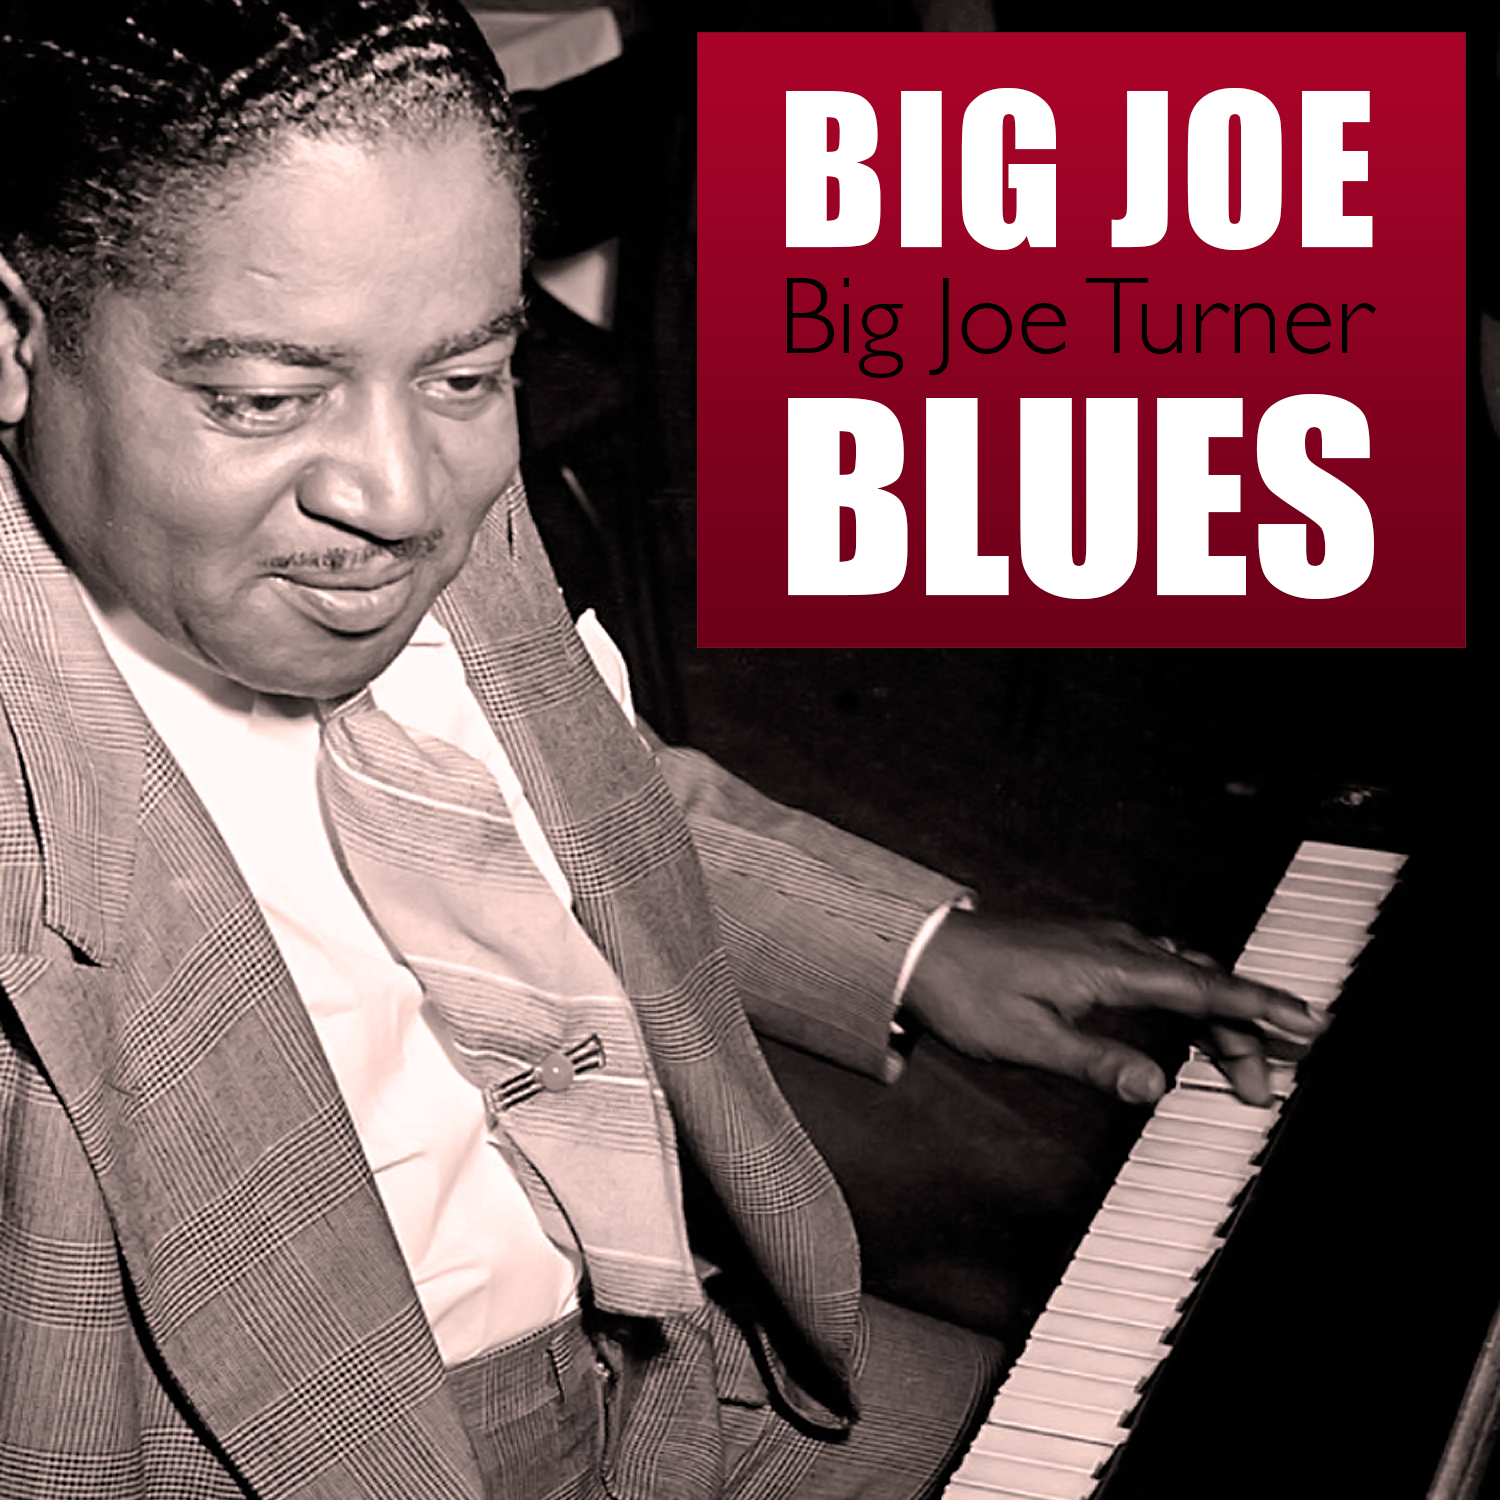 Big Joe Blues: Vol 1 & 2 by Big Joe Turner